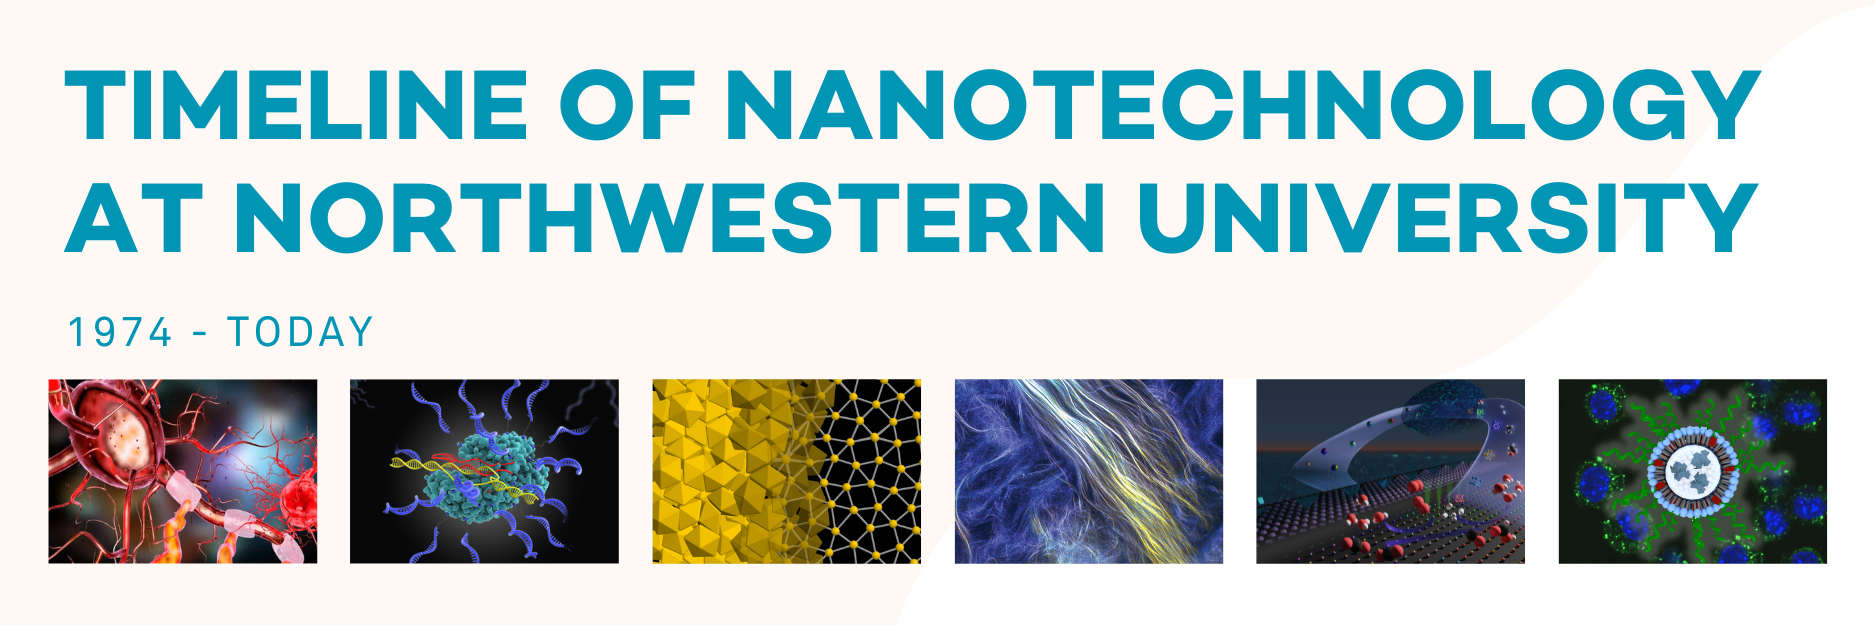 Nanotech Timeline